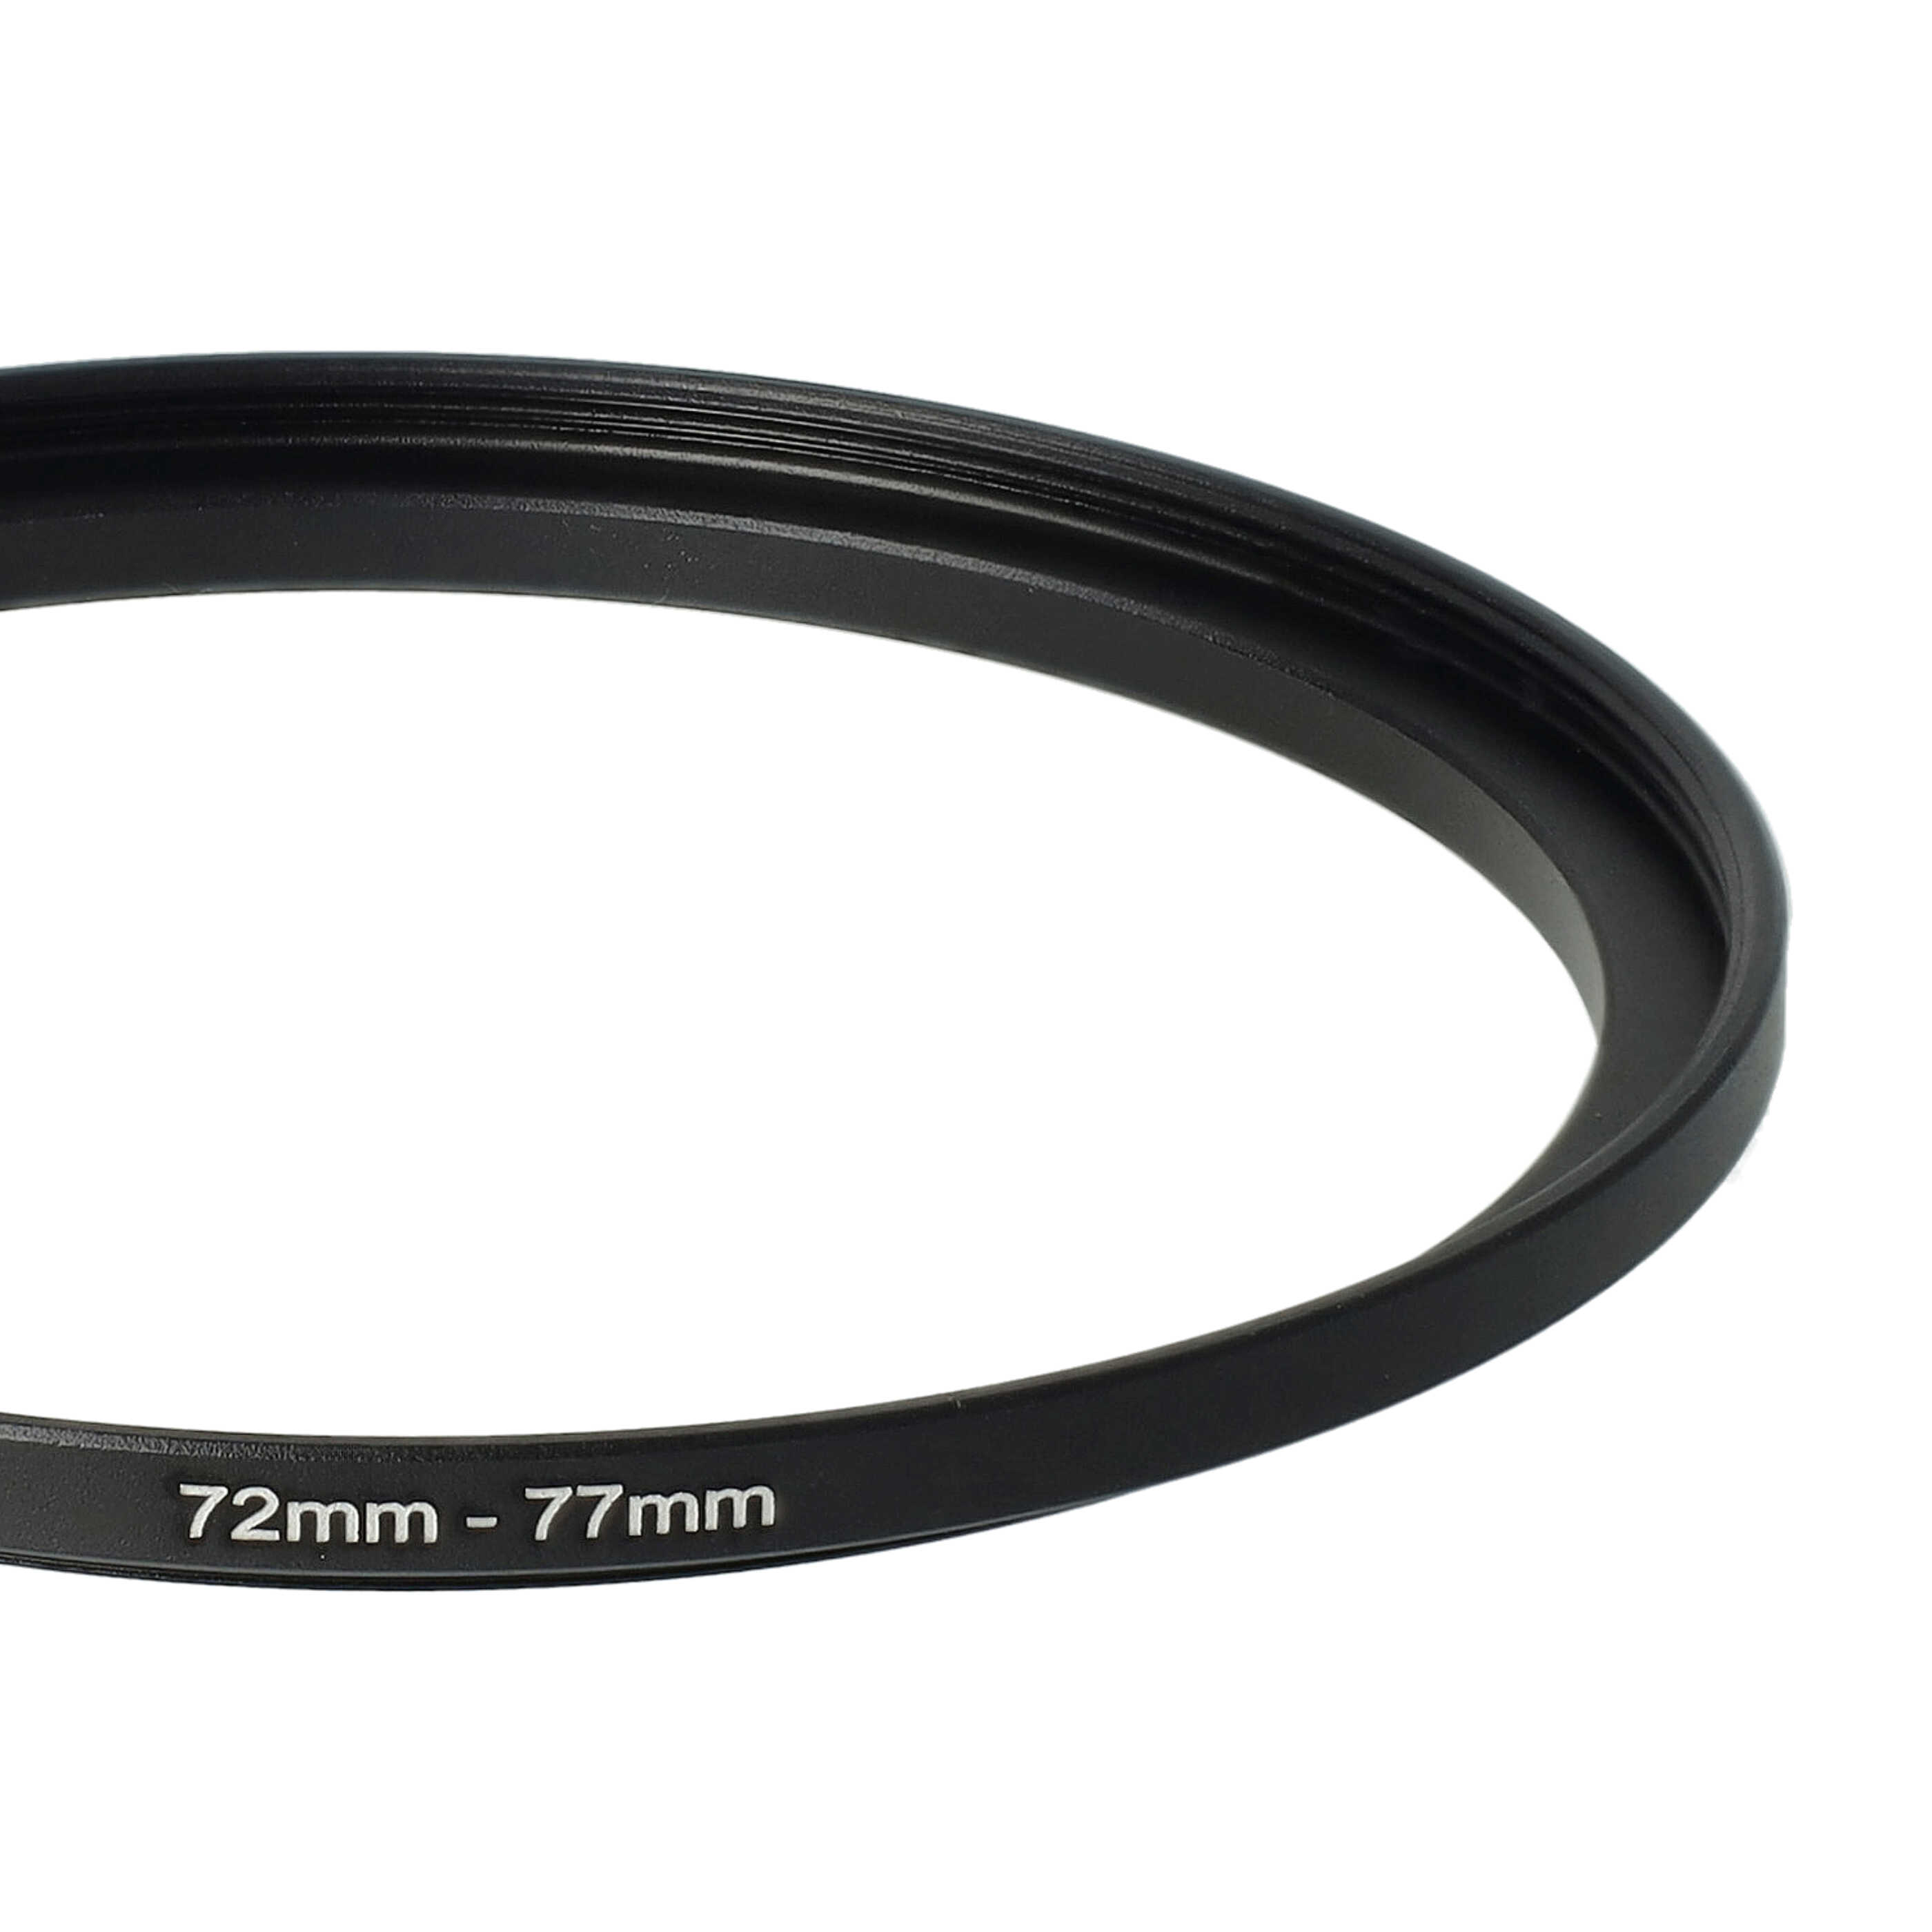 Step-Up-Ring Adapter 72 mm auf 77 mm passend für diverse Kamera-Objektive - Filteradapter